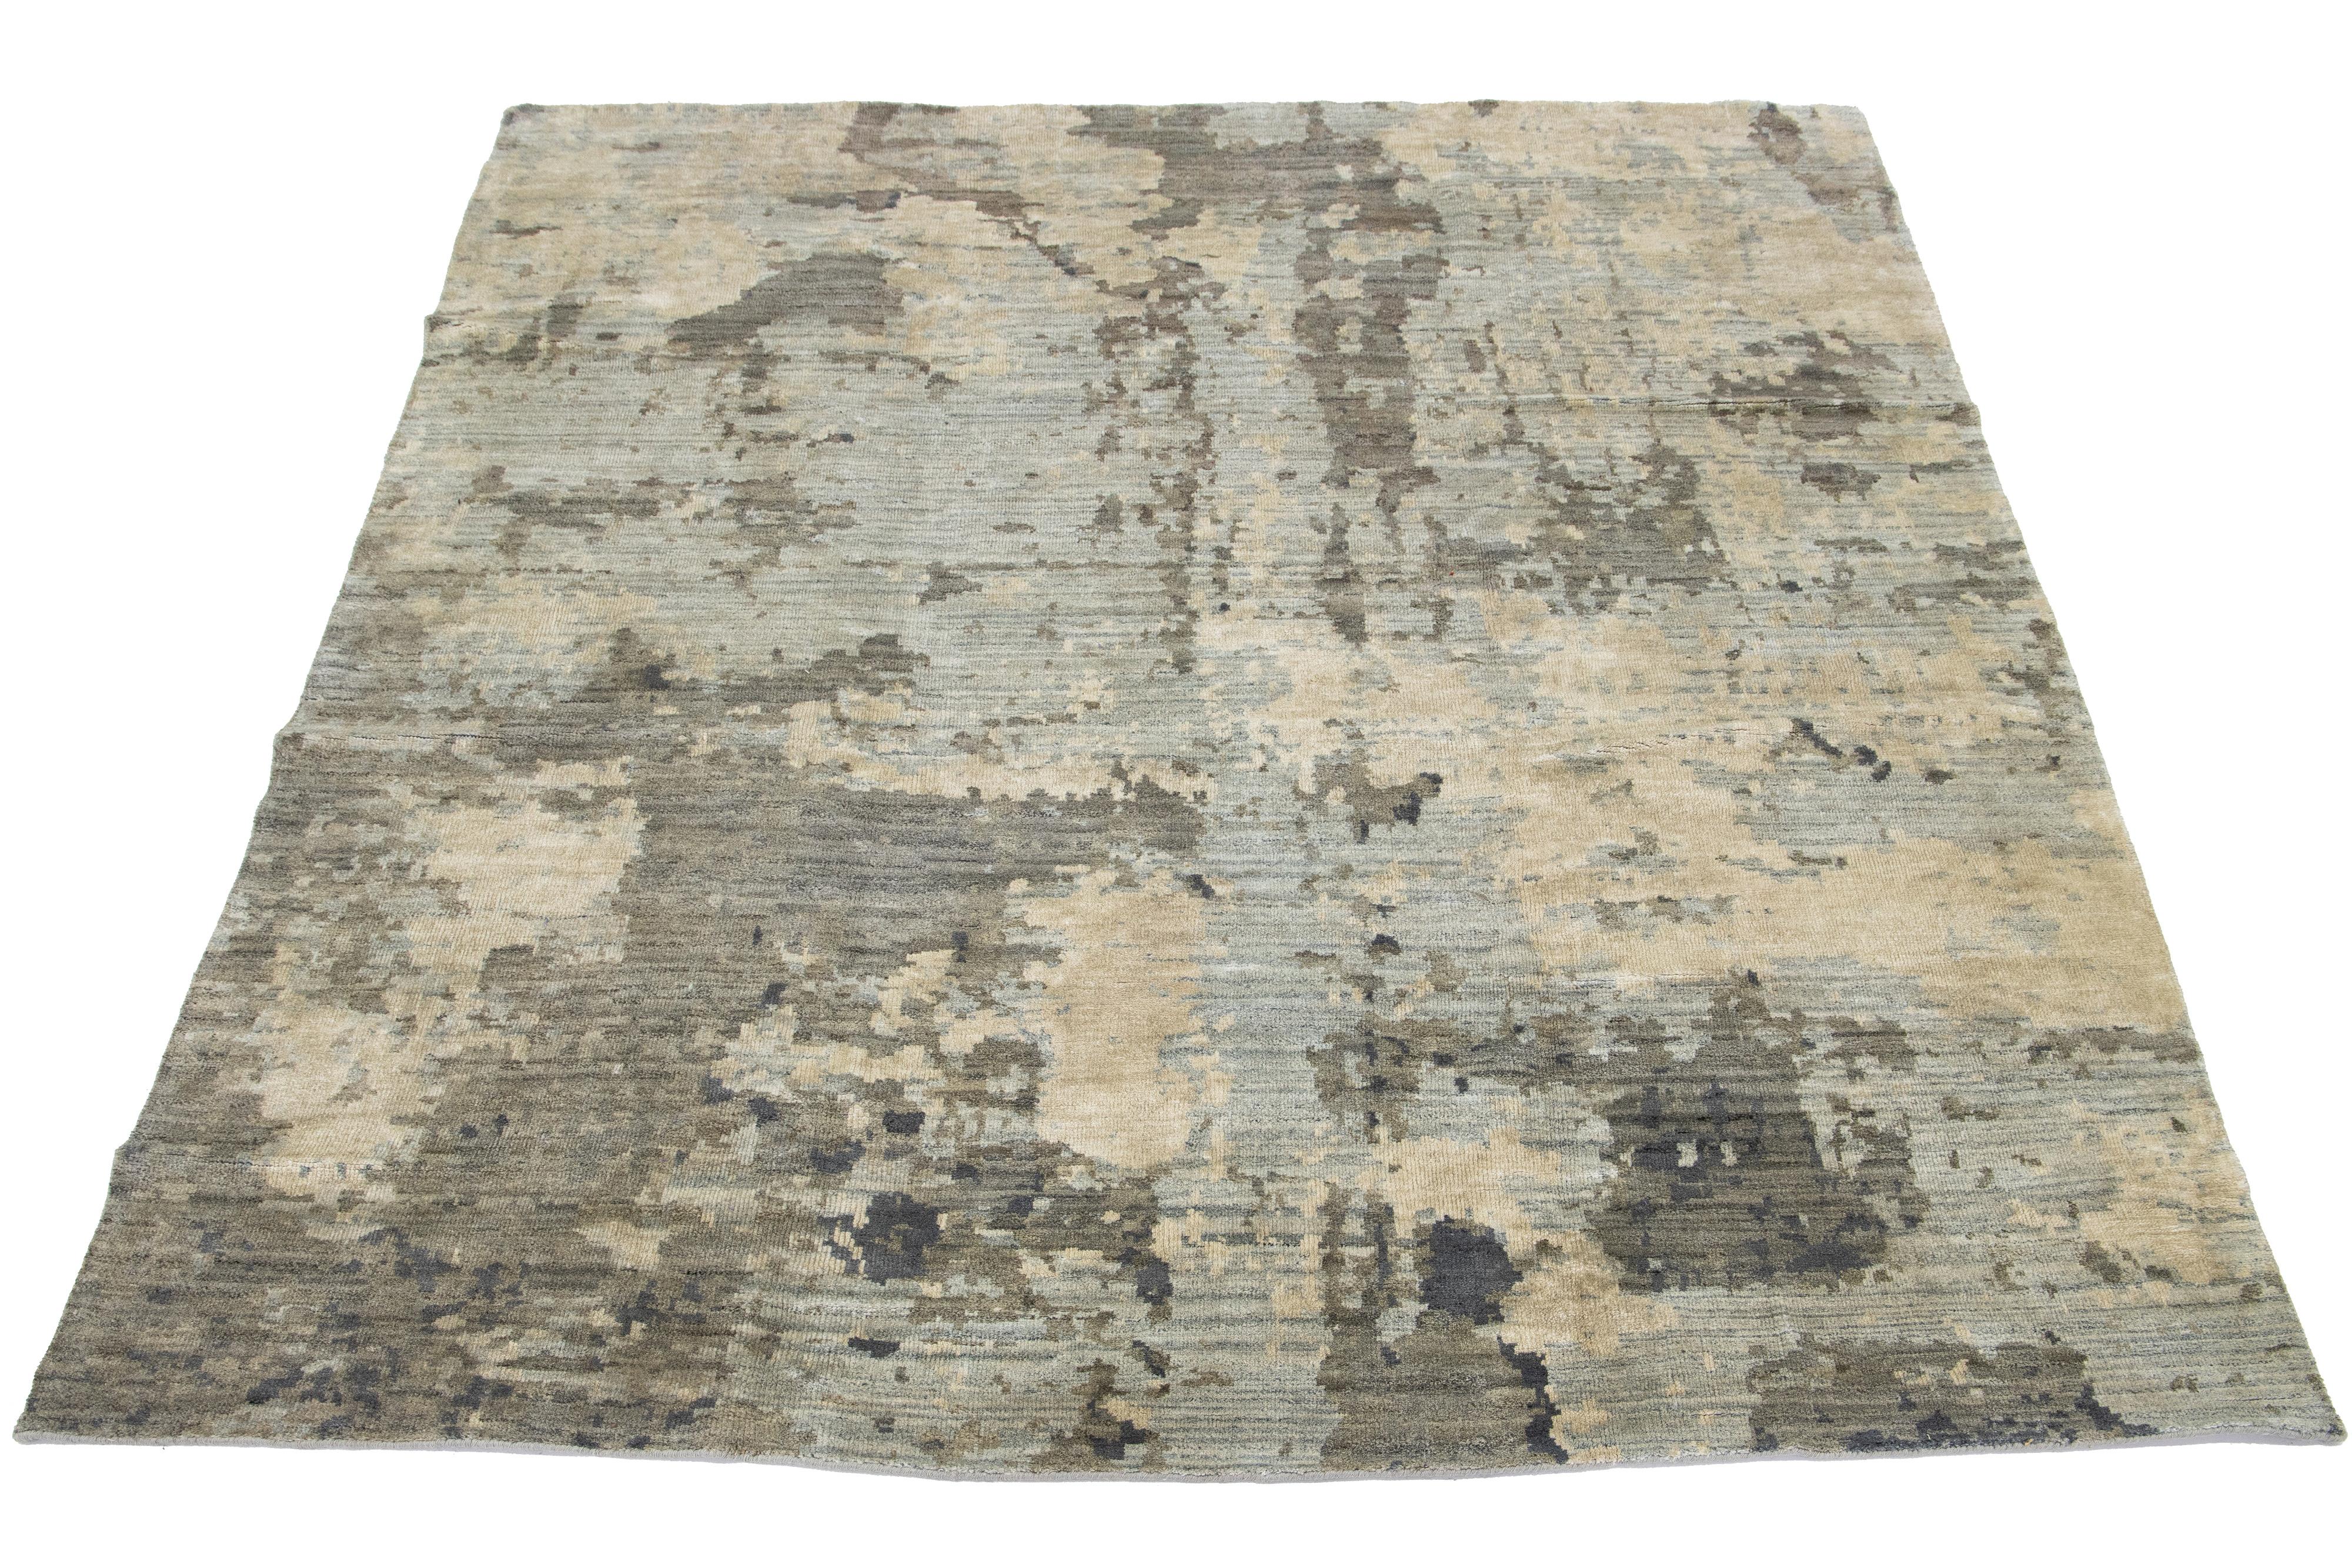 Dieser schöne, moderne, handgeknüpfte Teppich ist aus Wolle und Seide gefertigt und zeigt ein Farbfeld aus Beige und Grau. Der Teppich hat ein atemberaubendes abstraktes Allover-Muster.

Dieser Teppich misst 7'10